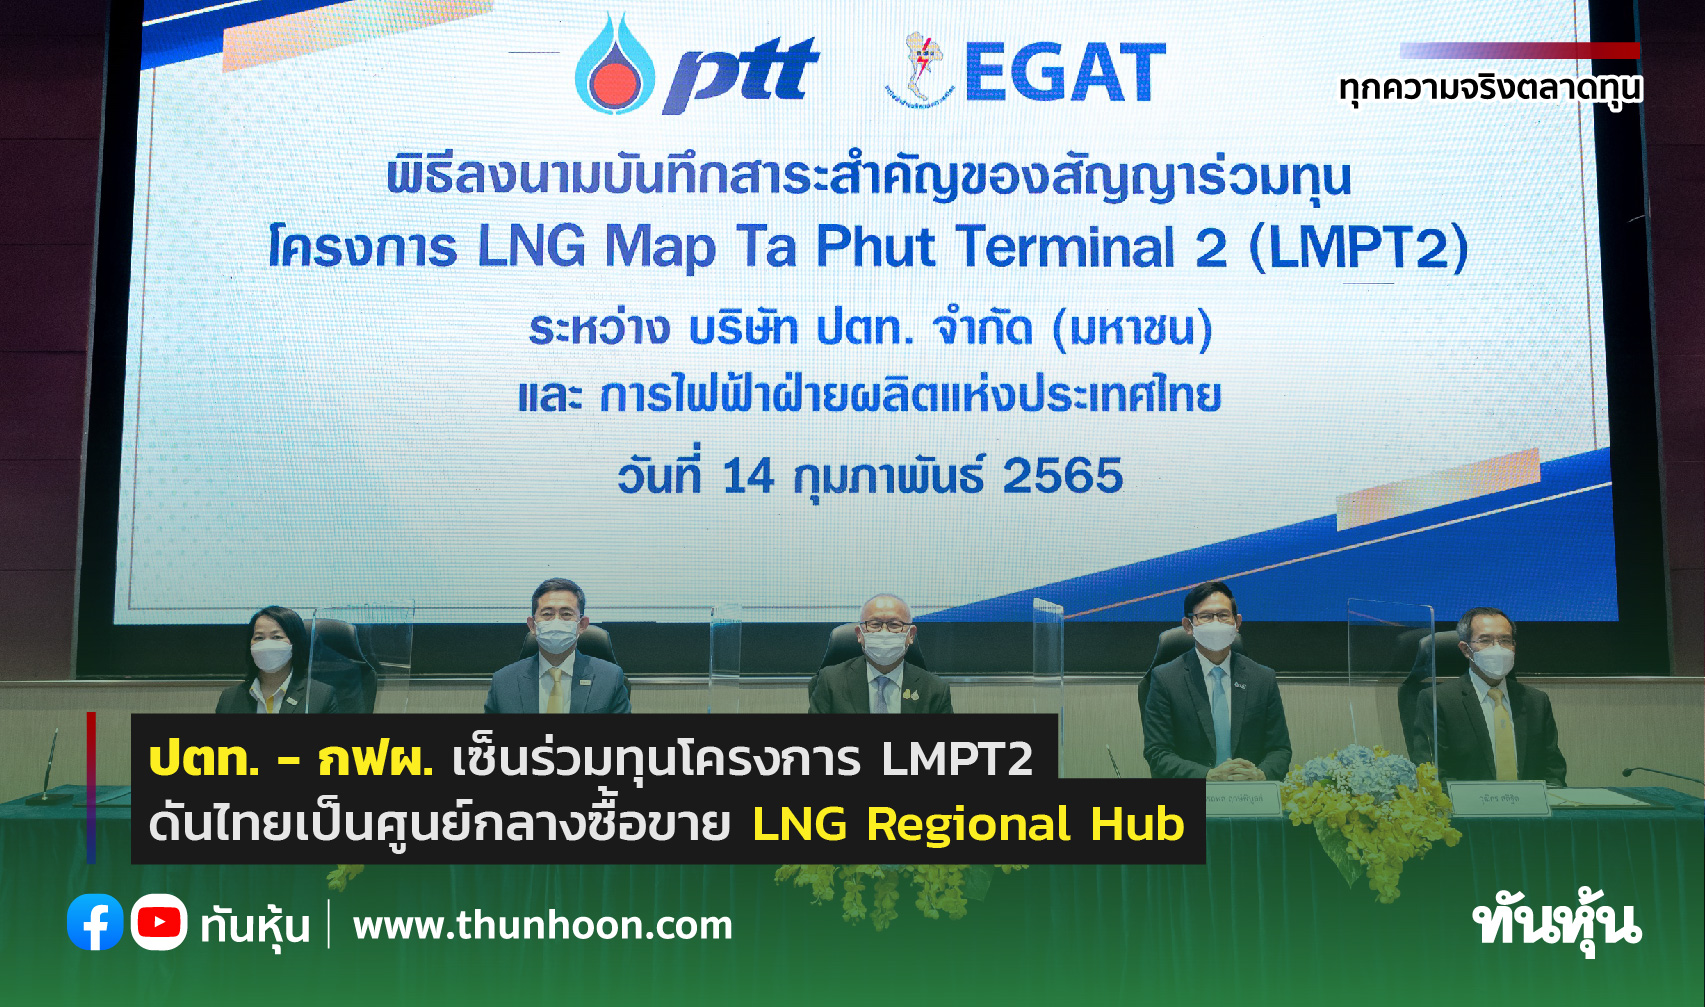 ปตท.-กฟผ. เซ็นร่วมทุนโครงการ LMPT2 ดันไทยเป็นศูนย์กลางซื้อขาย LNG Regional Hub